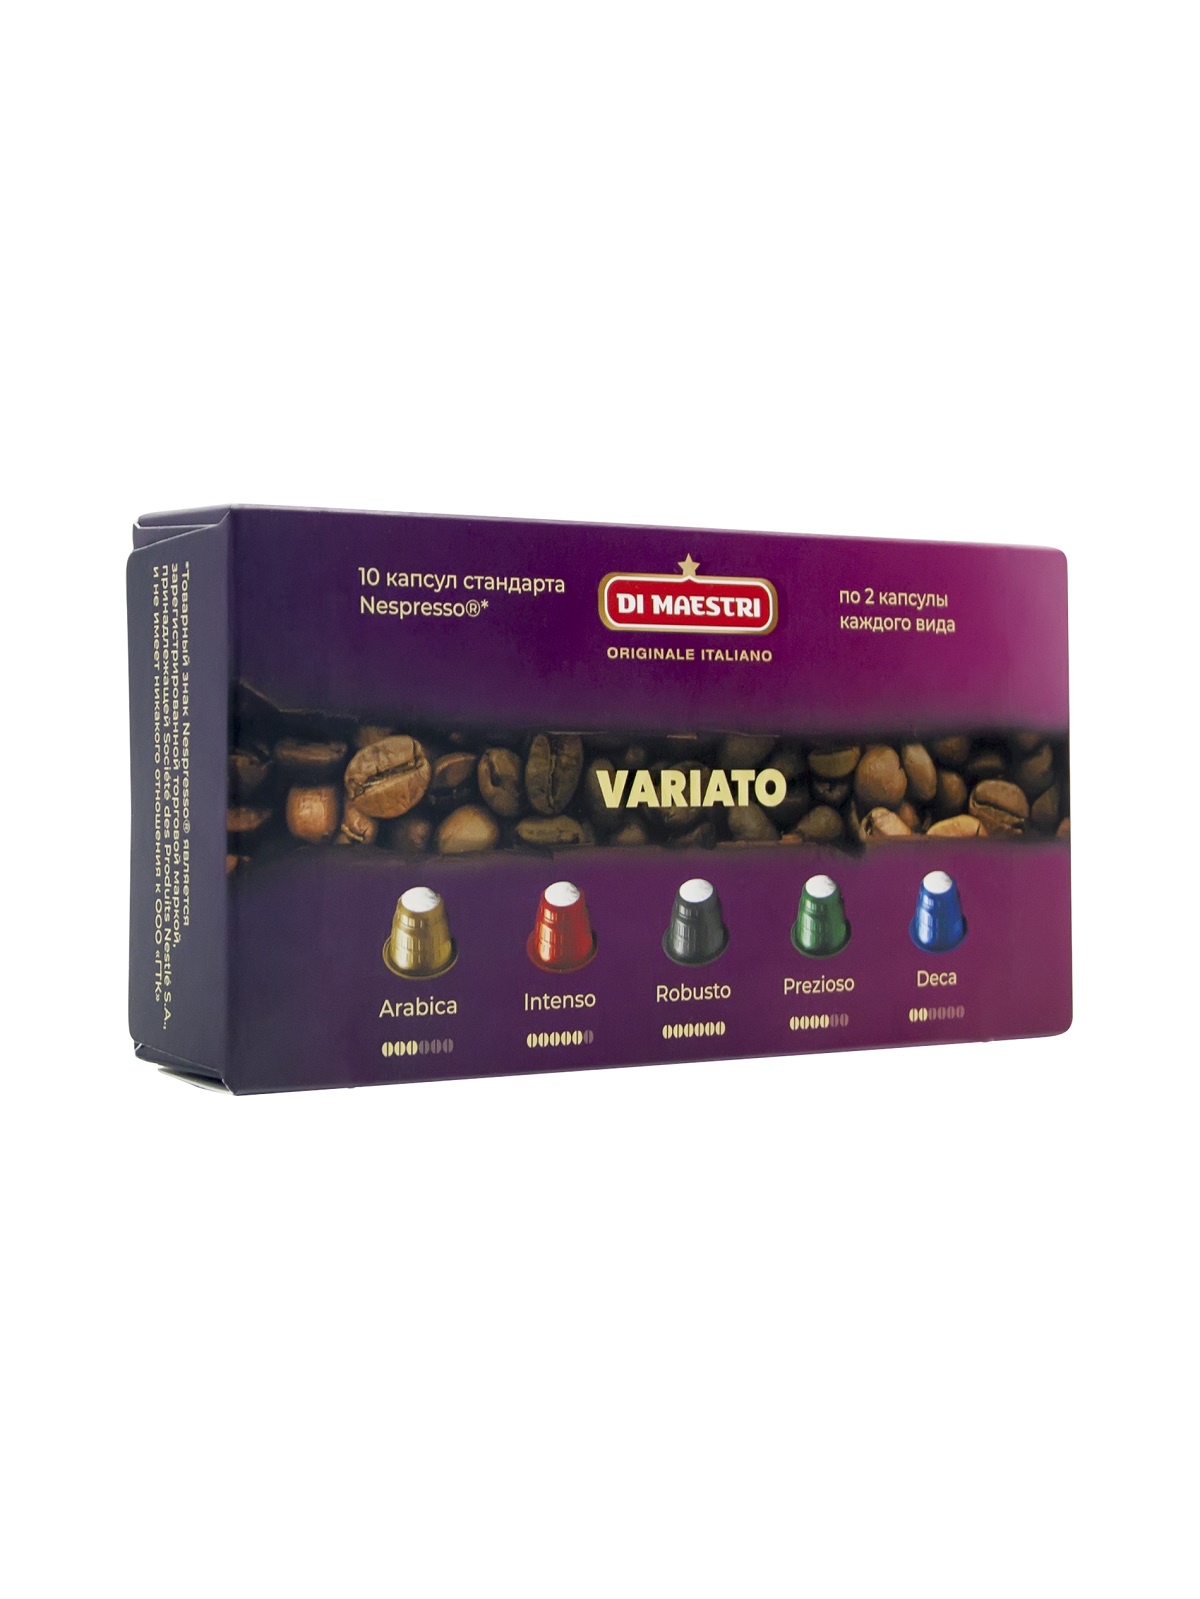 фото Di Maestri / Кофе в капсулах Variato стандарта Nespresso (Неспрессо), 10 шт.